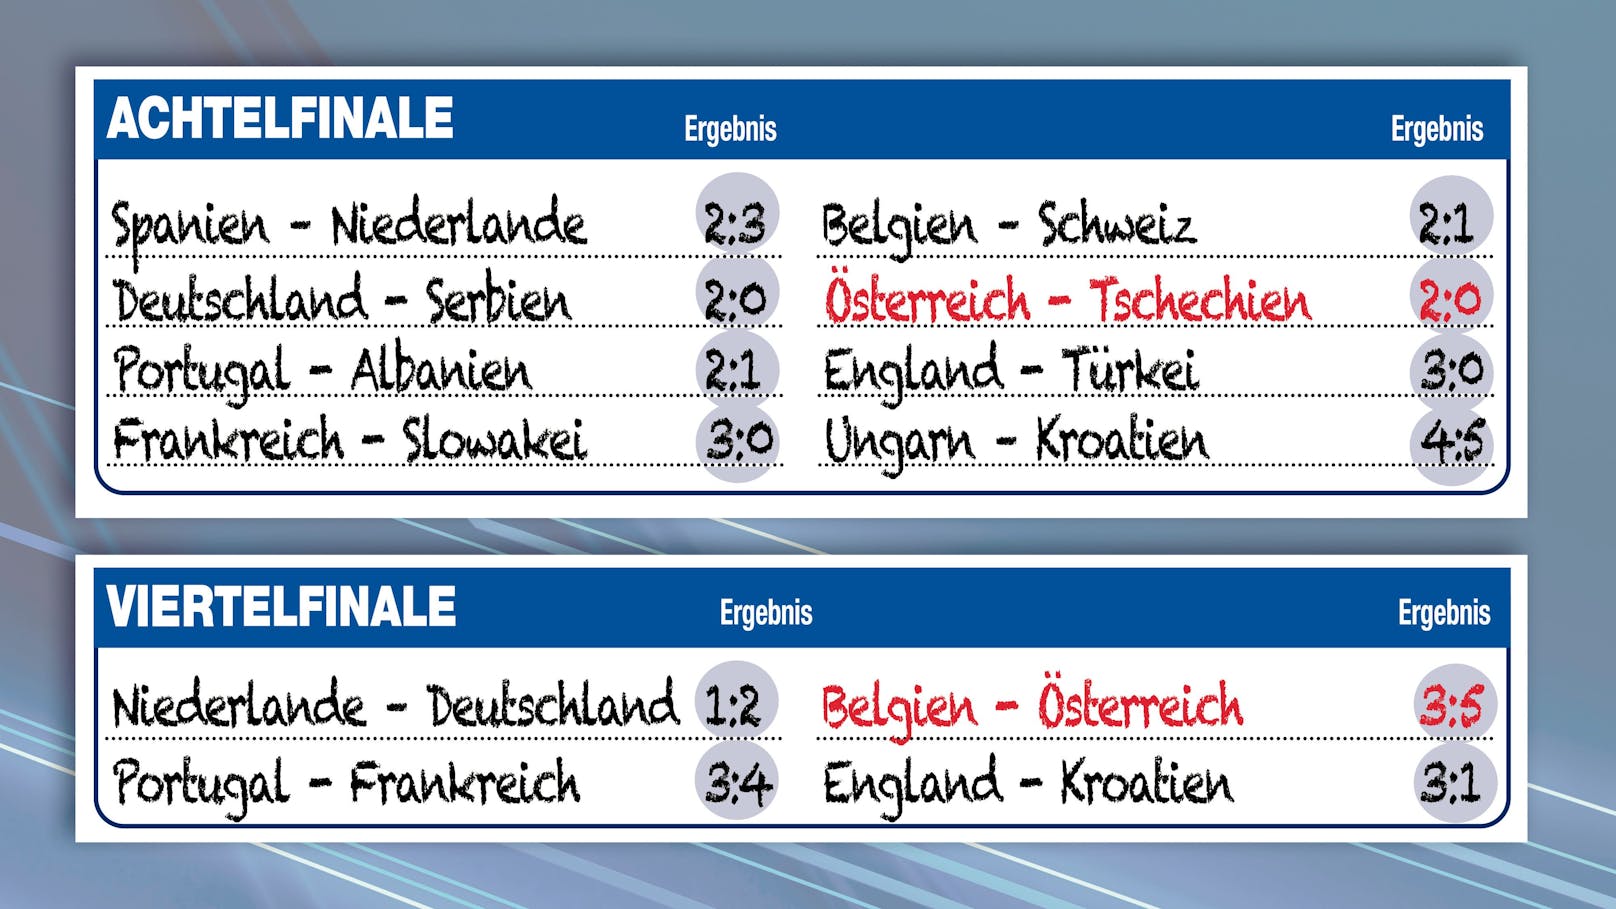 Das ÖFB-Team wirft Tschechien und Belgien raus, zieht sensationell ins Halbfinale ein.